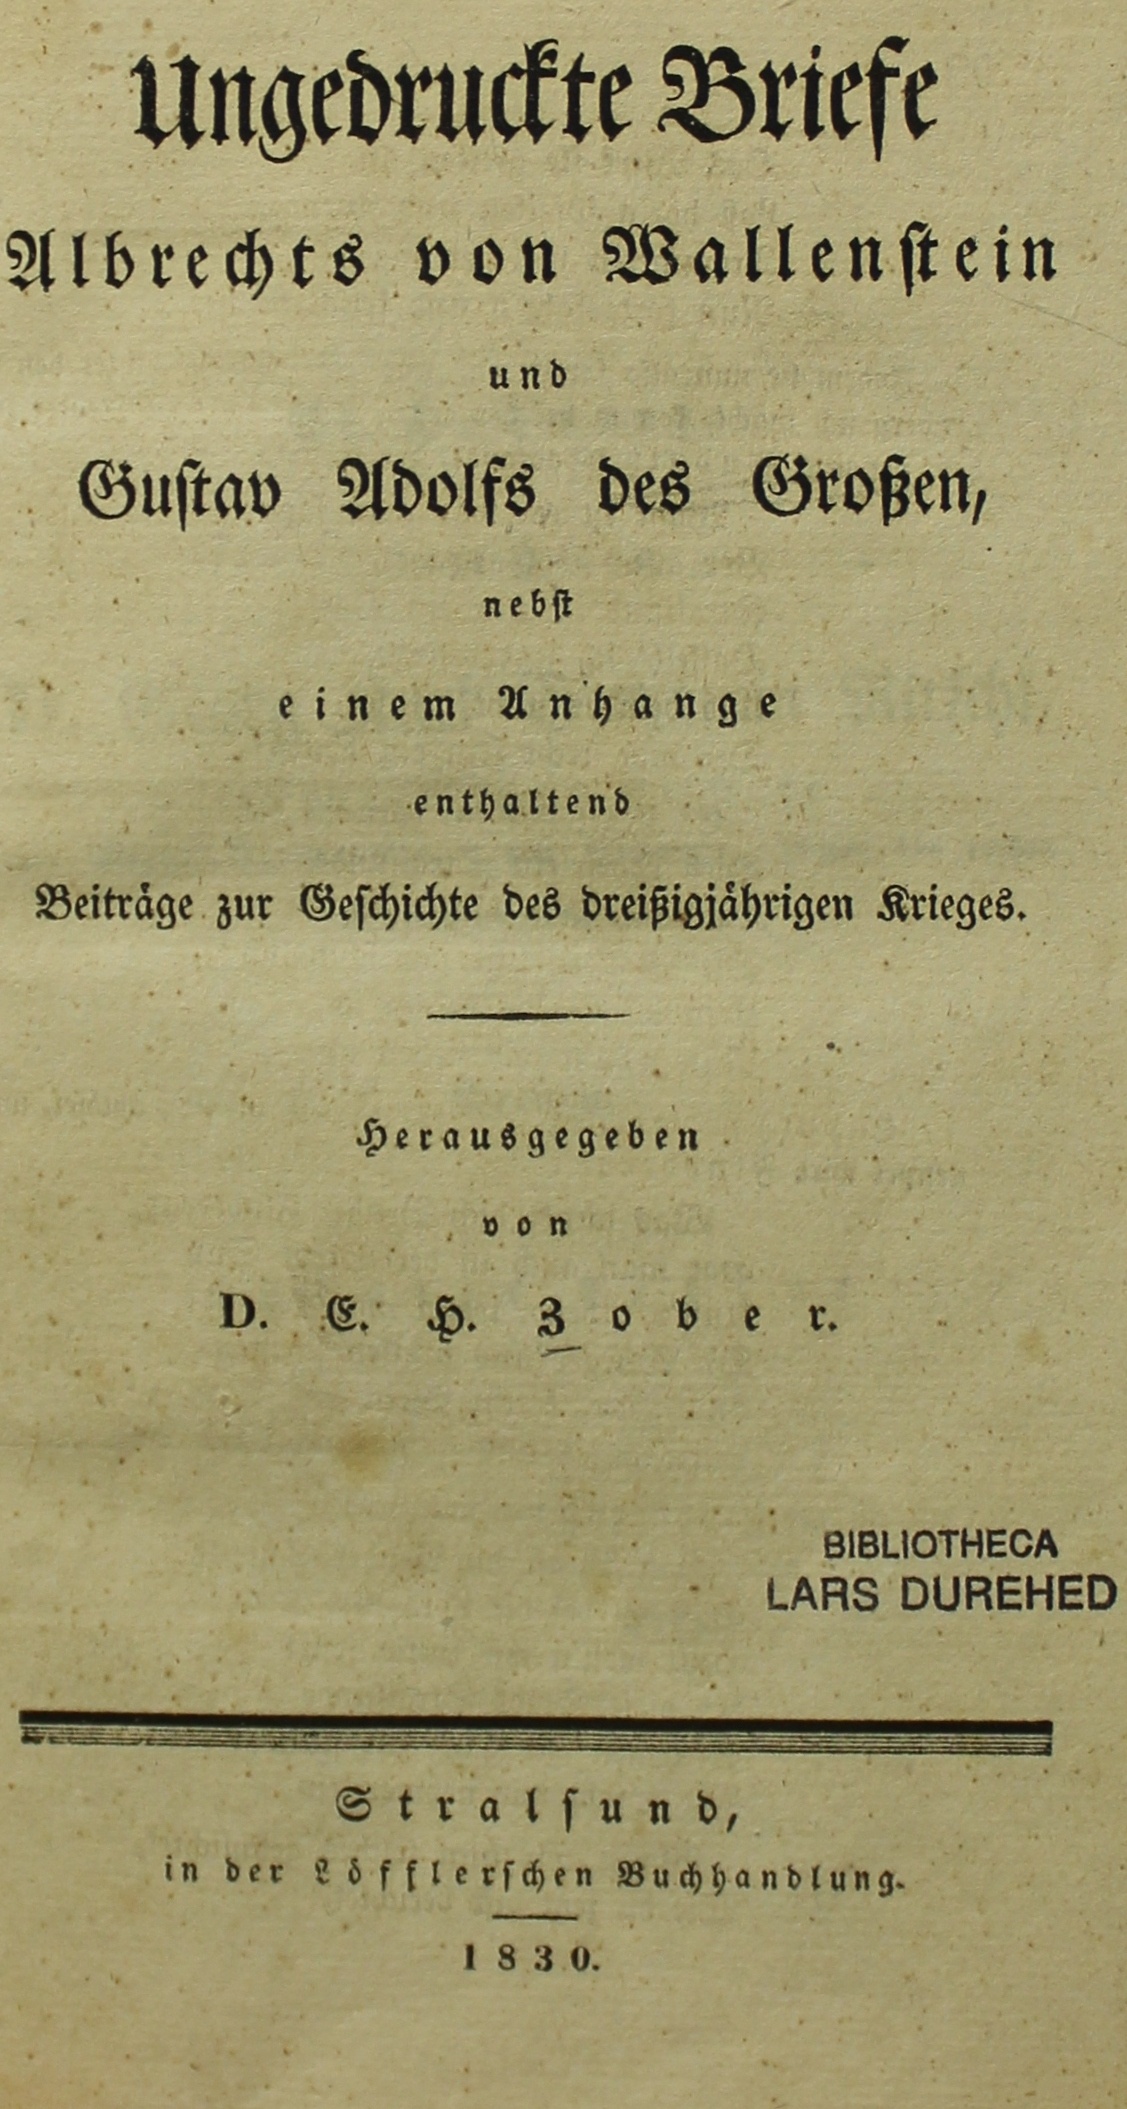 Ungedruckte Briefe Albrechts von Wallenstein und Gustav Adolfs des Grossen (Museum im Schloss Lützen CC BY-NC-SA)